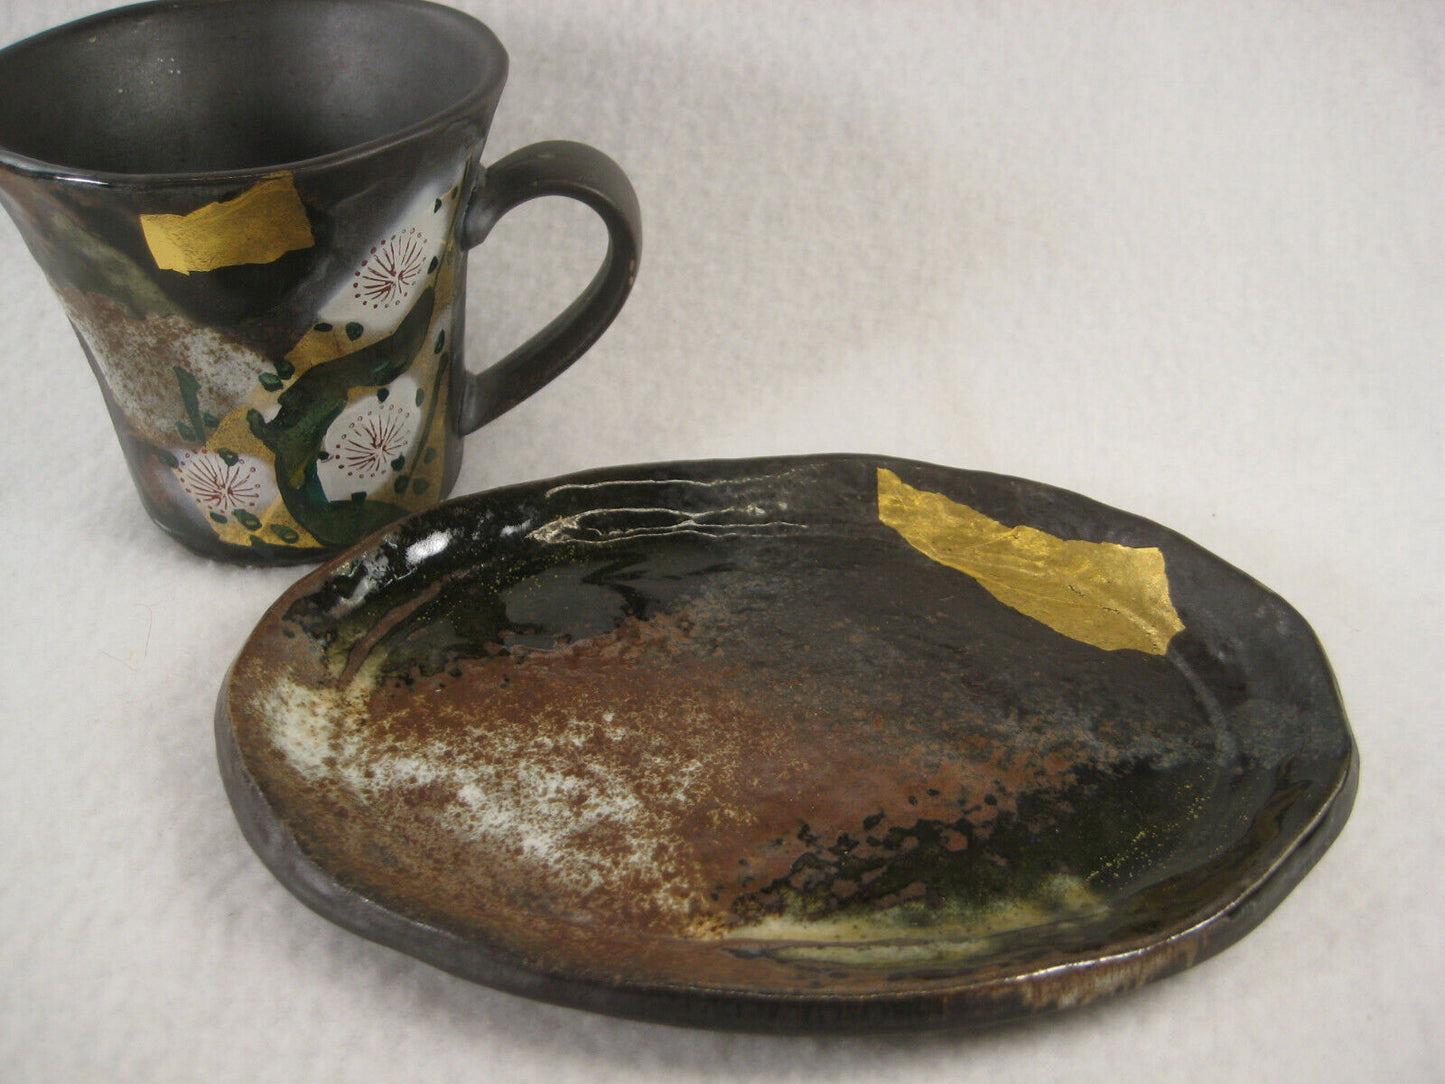 Vintage Japanese Hand Painted Kutani Teacup & Saucer Gold Leaf & Plum Blossoms